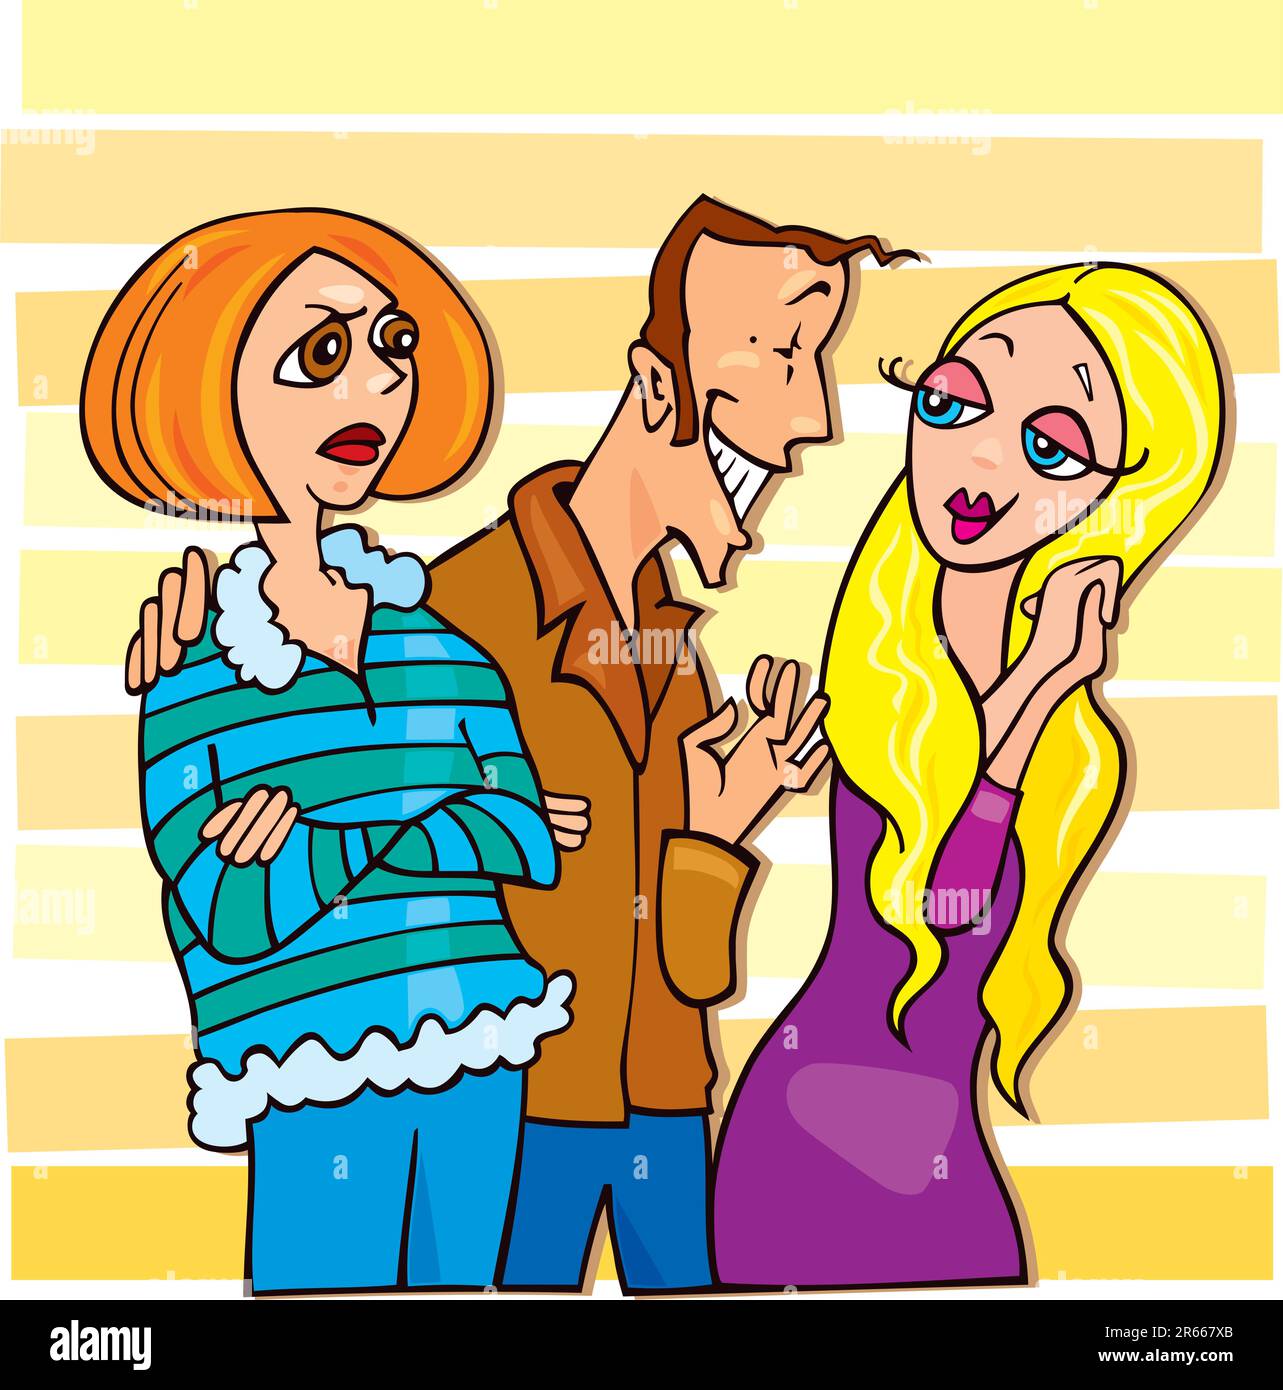 Cartoon-Illustration eines Mannes, der mit dem süßen blonden Mädchen und seiner eifersüchtigen Frau spricht Stock Vektor